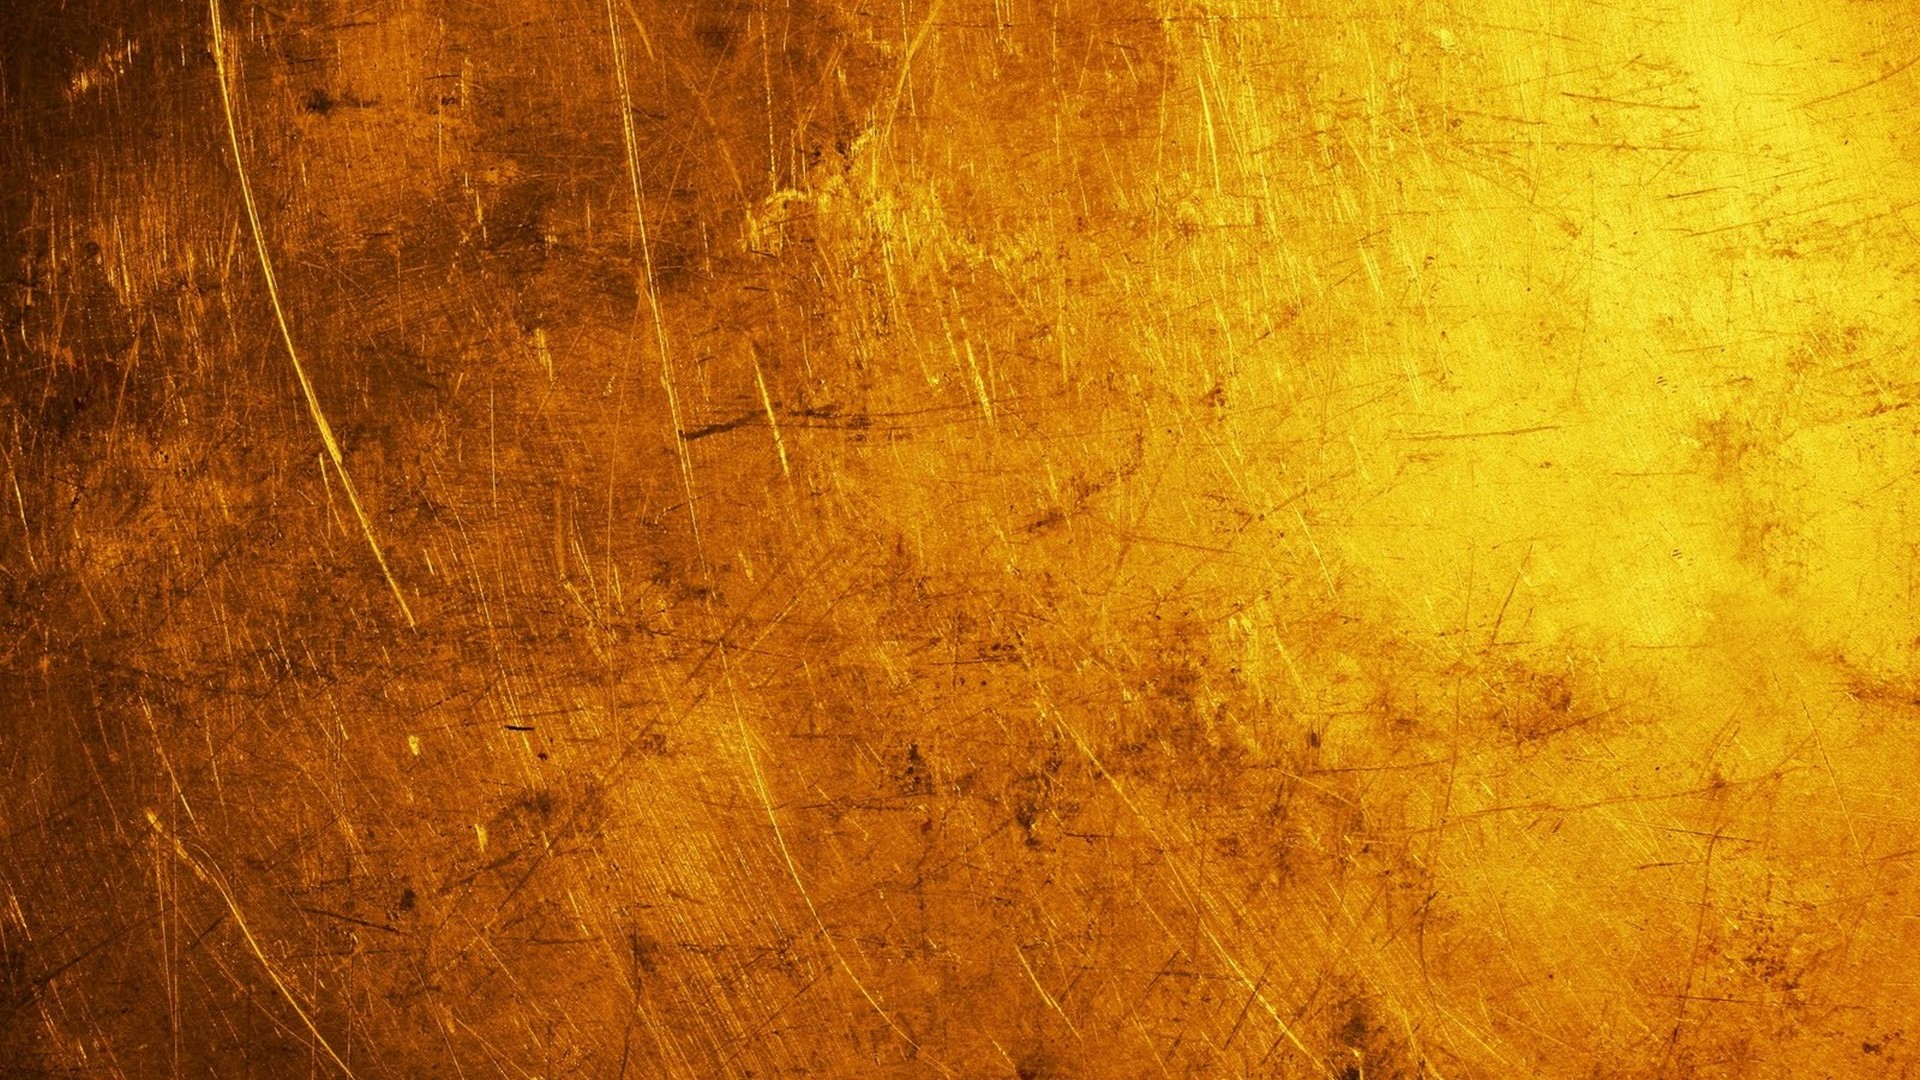 cool gold wallpaper,yellow,orange,brown,wood,amber